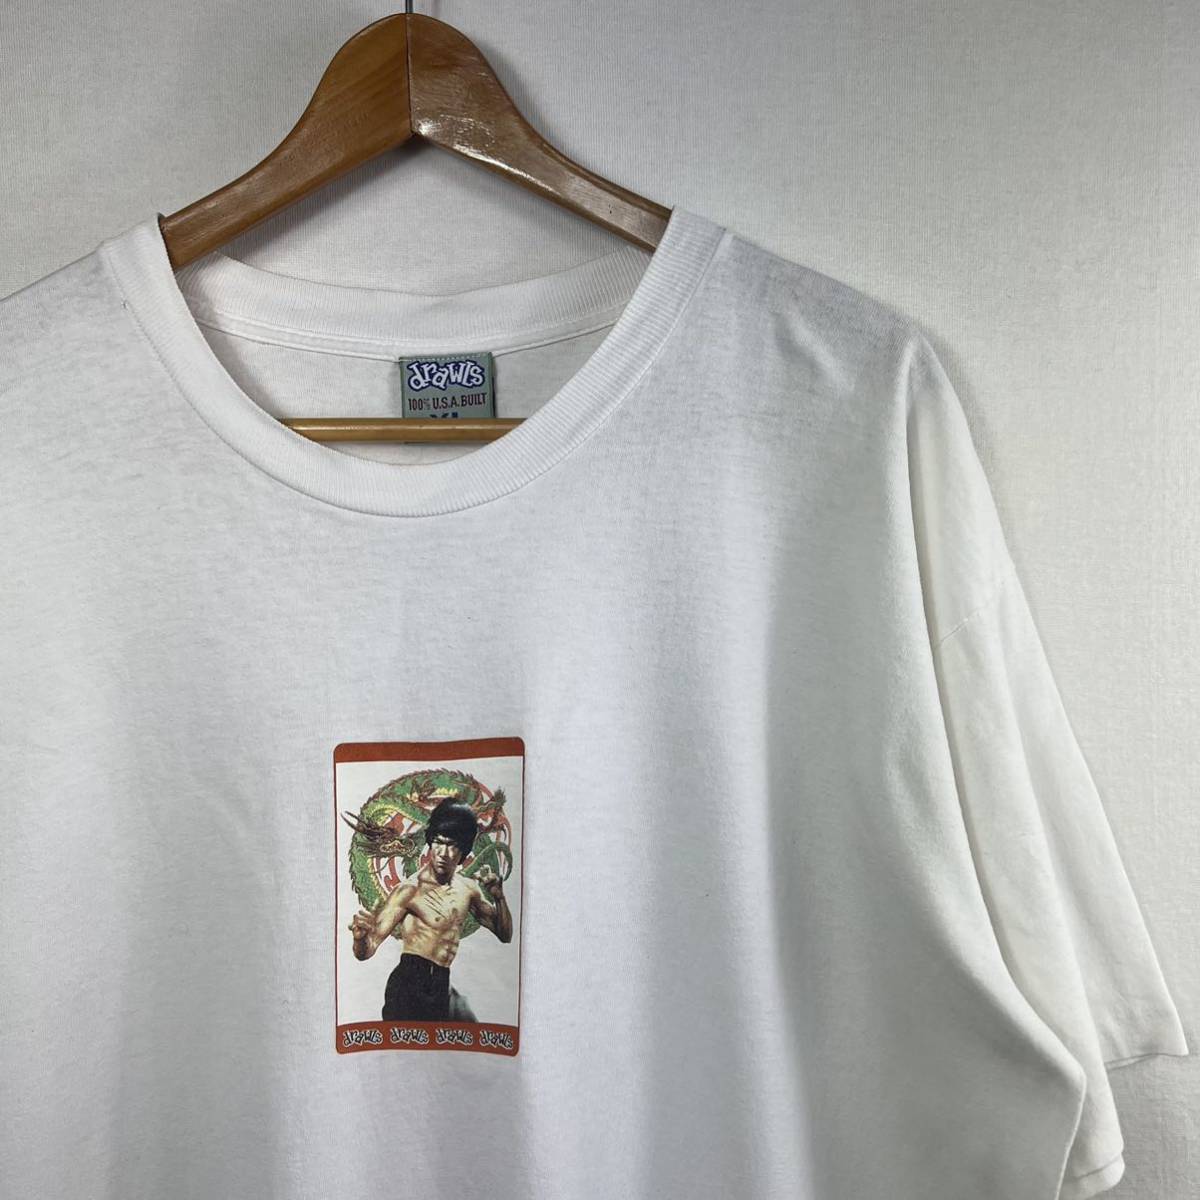 最新な 90s【drawls】ブルースリー ビンテージ Tシャツ 元ネタ